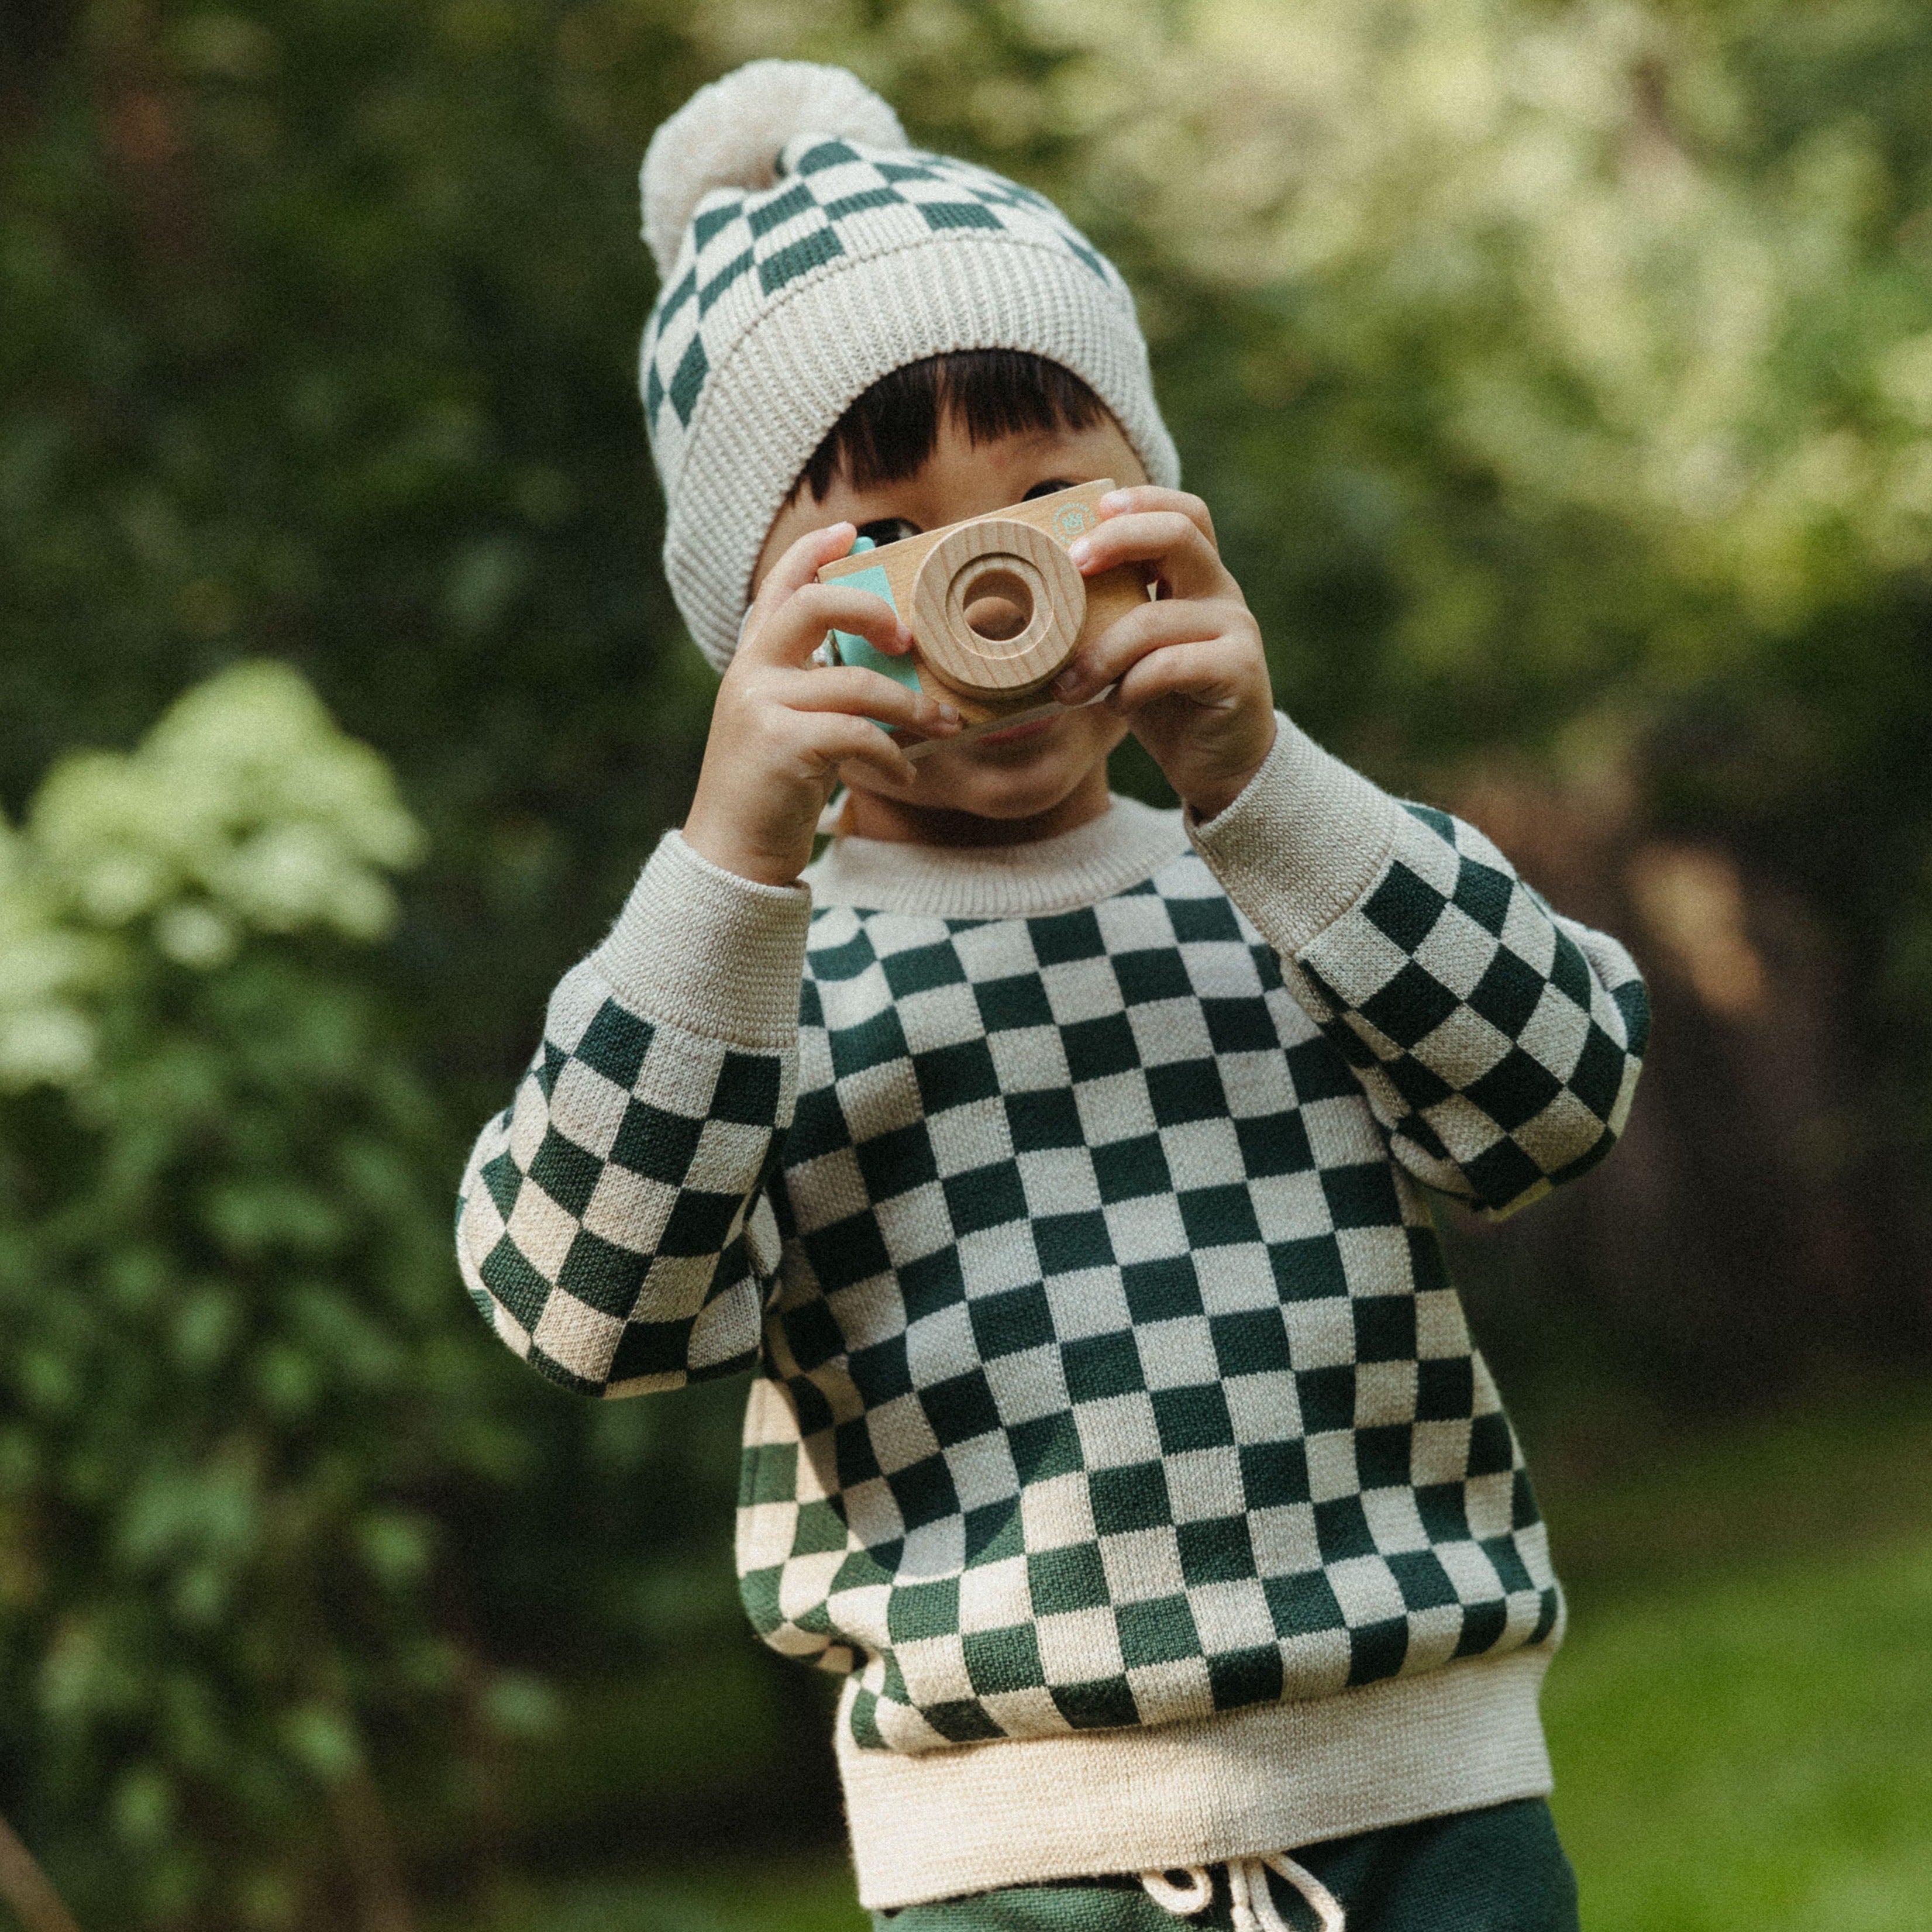 Kid Story: Merino Green Chessboard sweater